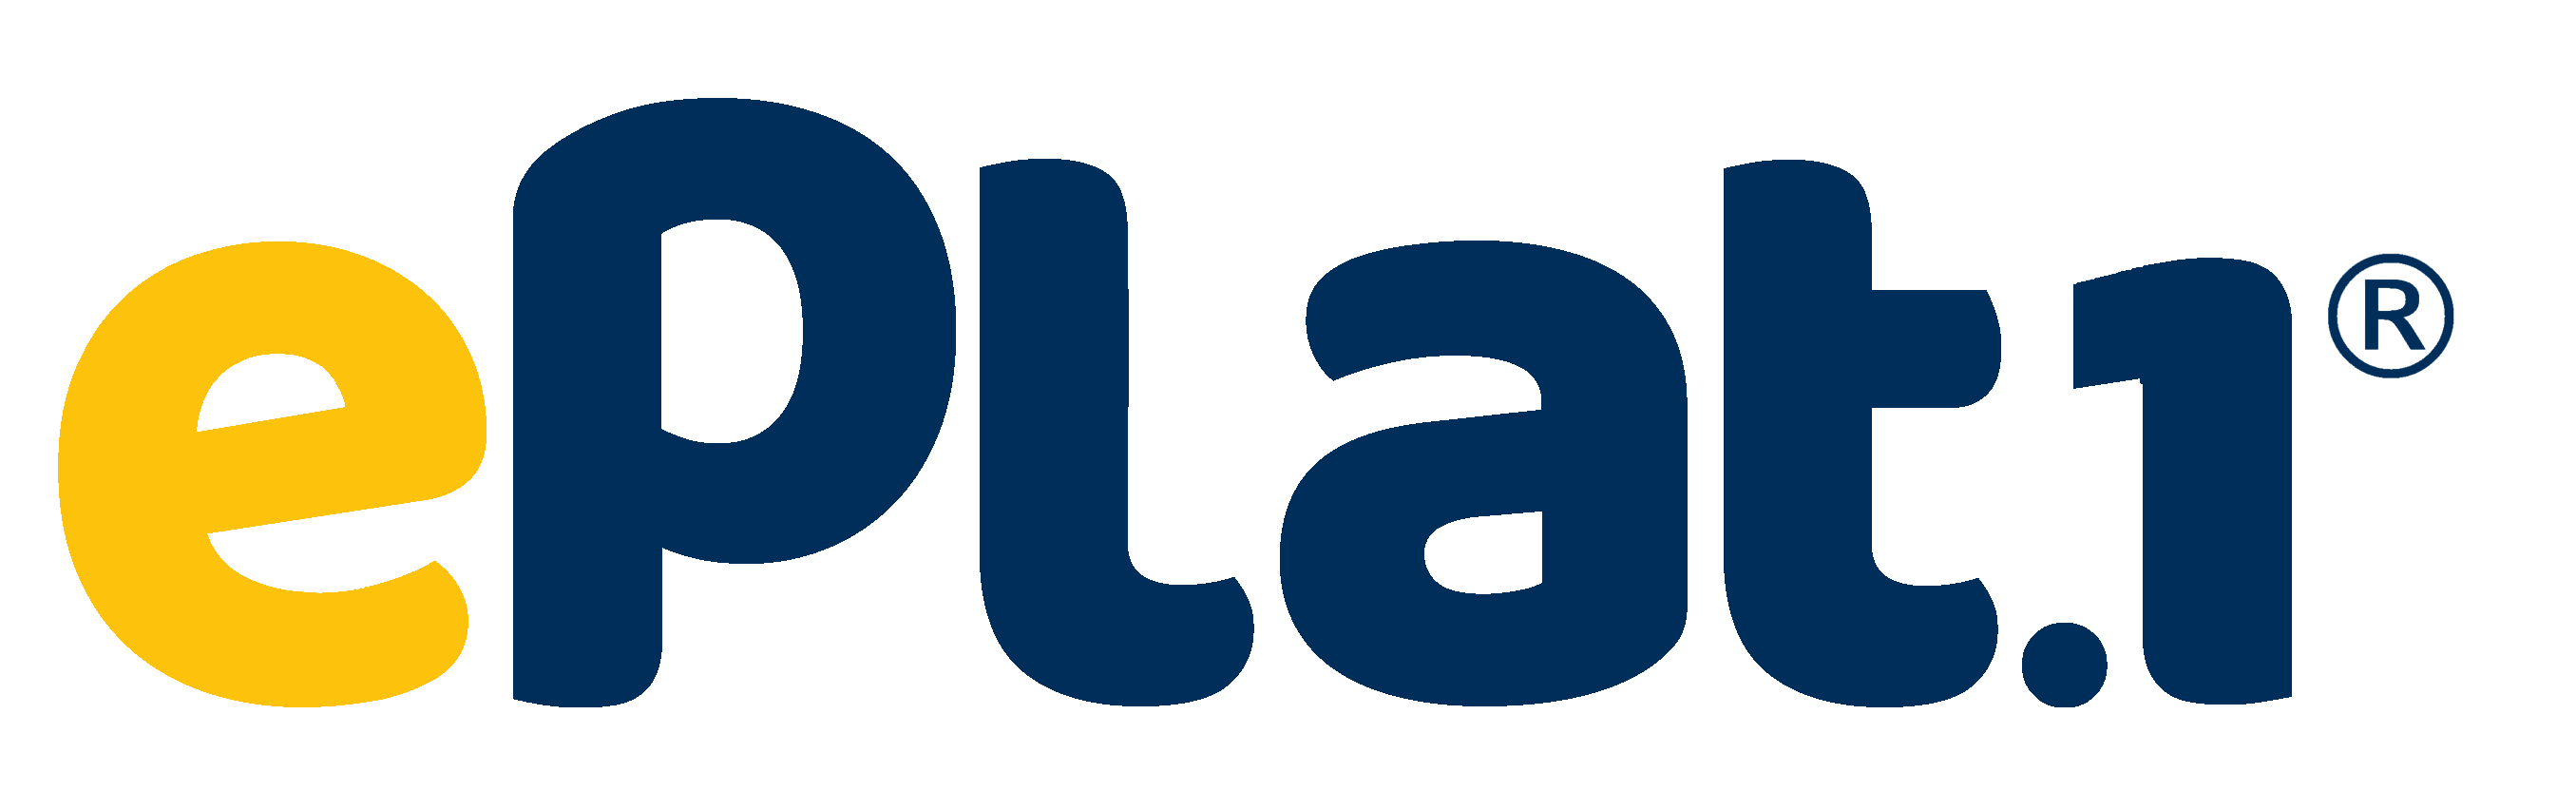 eplat1 logo